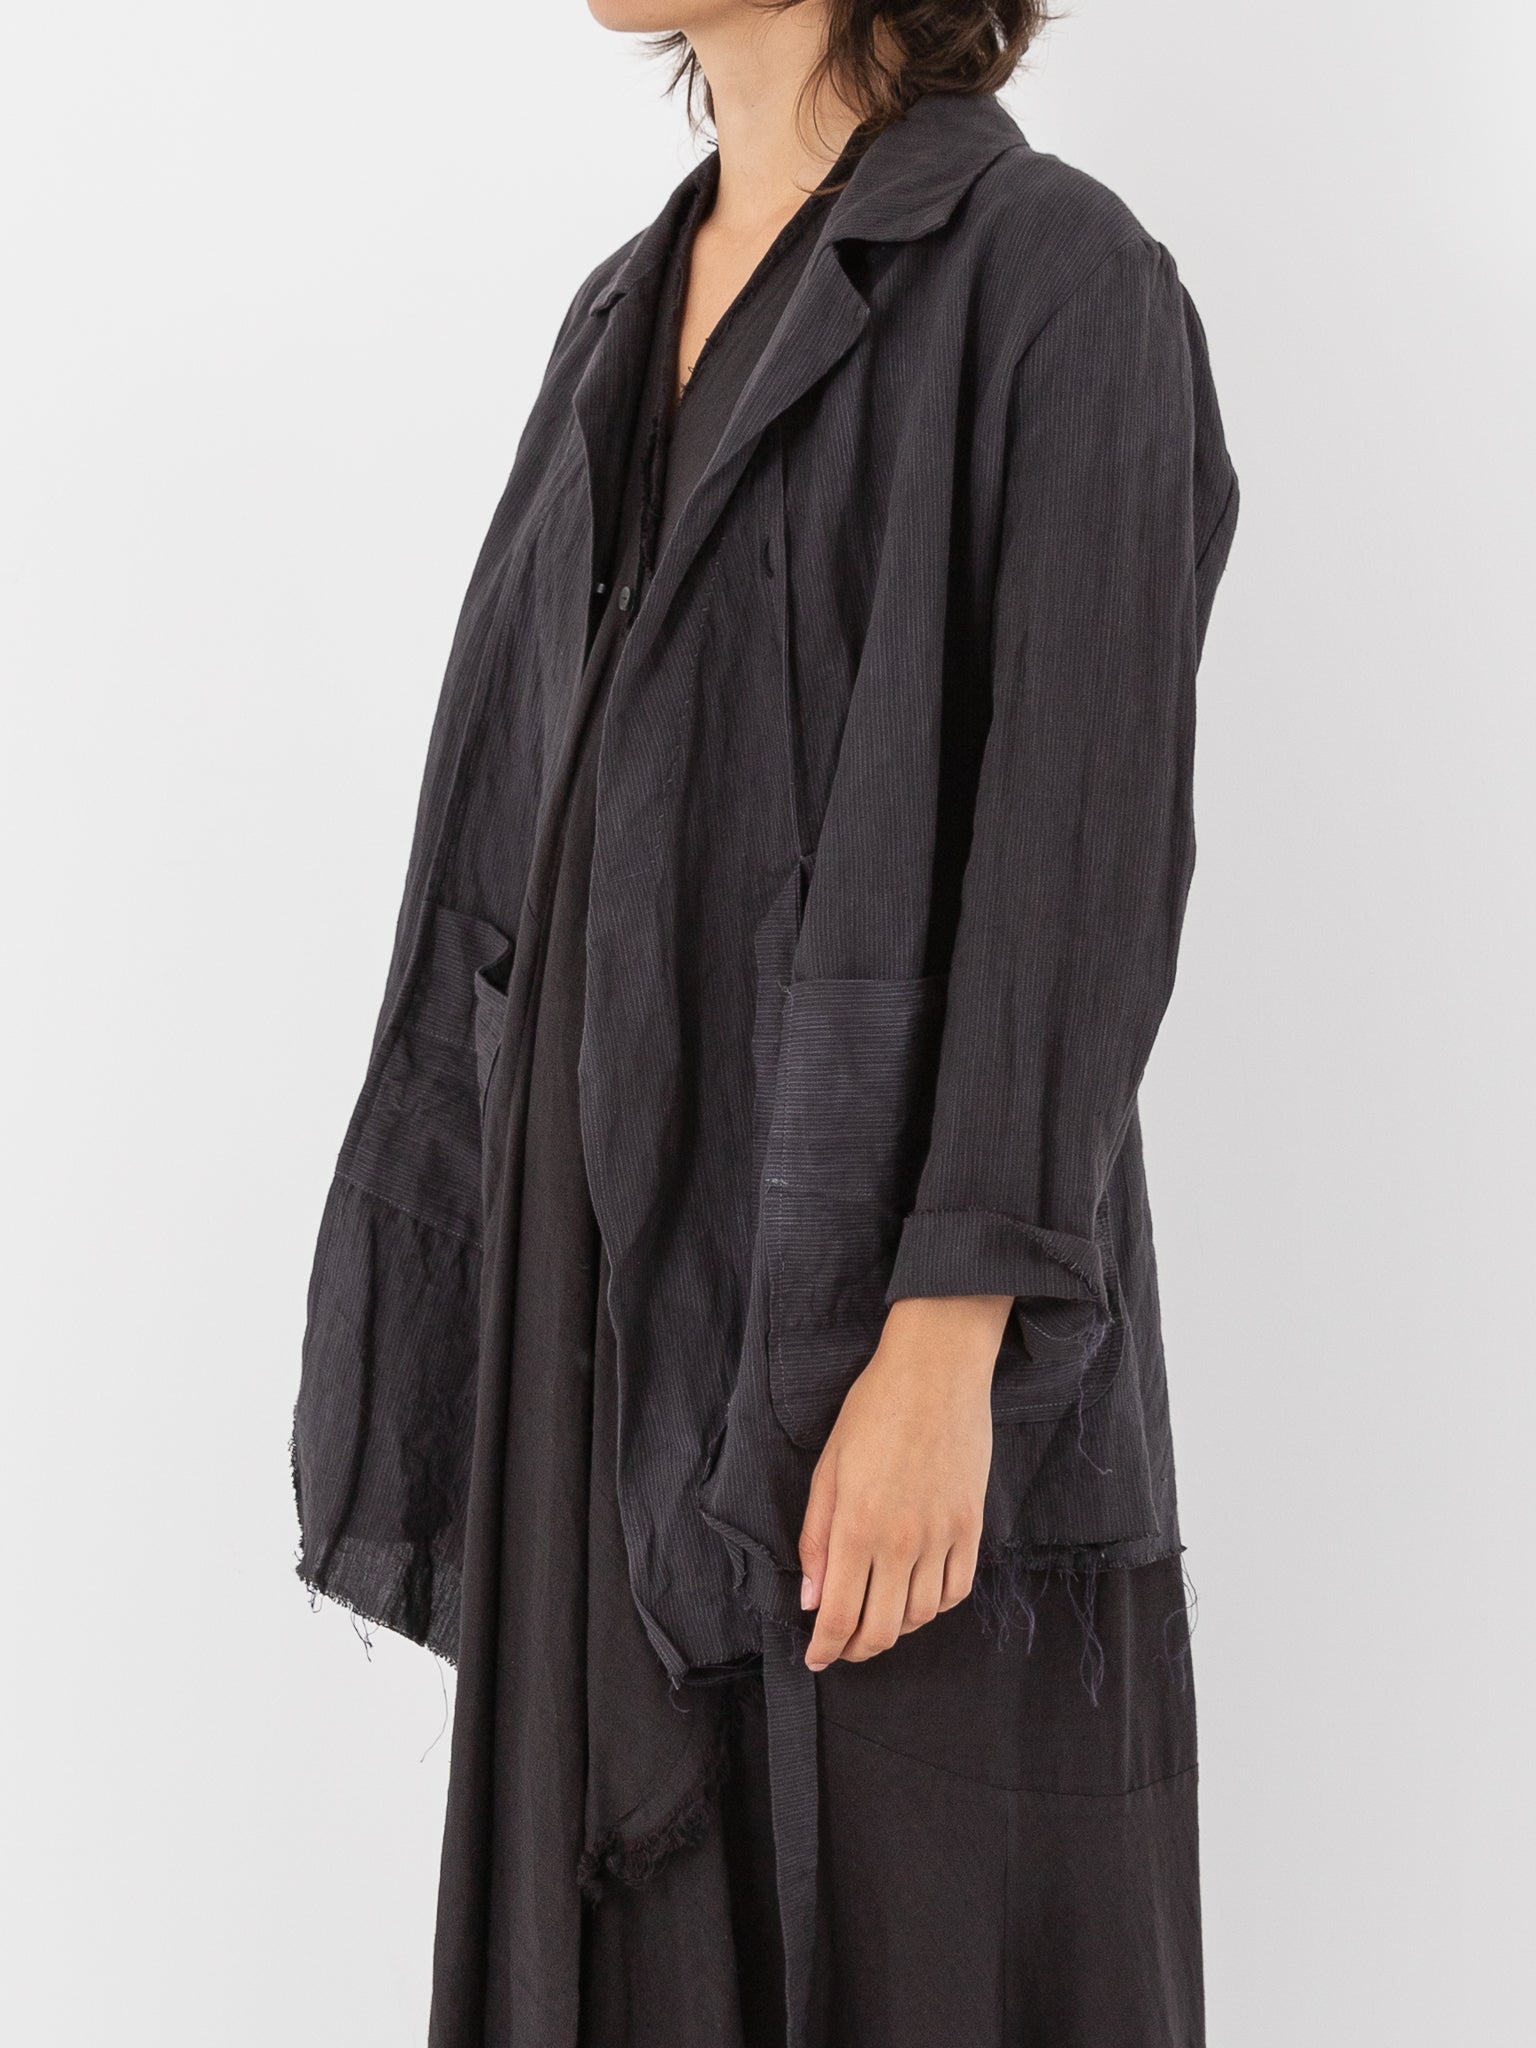 Atelier Suppan Tie Front Jacket, Dark - Worthwhile